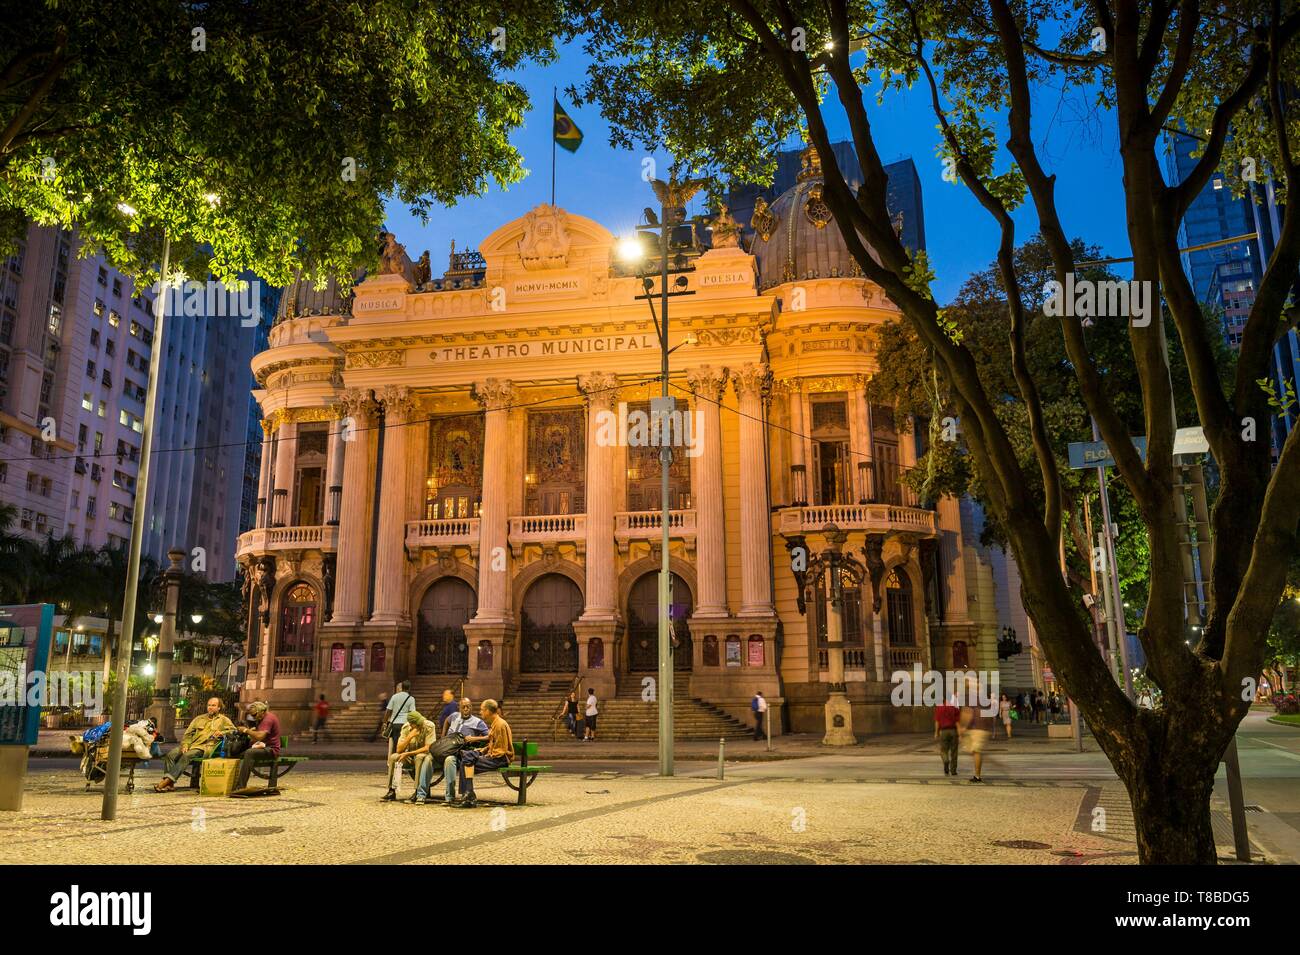 Il Brasile, a sud est della regione, Rio de Janeiro, città classificate patrimonio Mondiale di UNESCO, Teatro Comunale (Theatro Municipal) Foto Stock